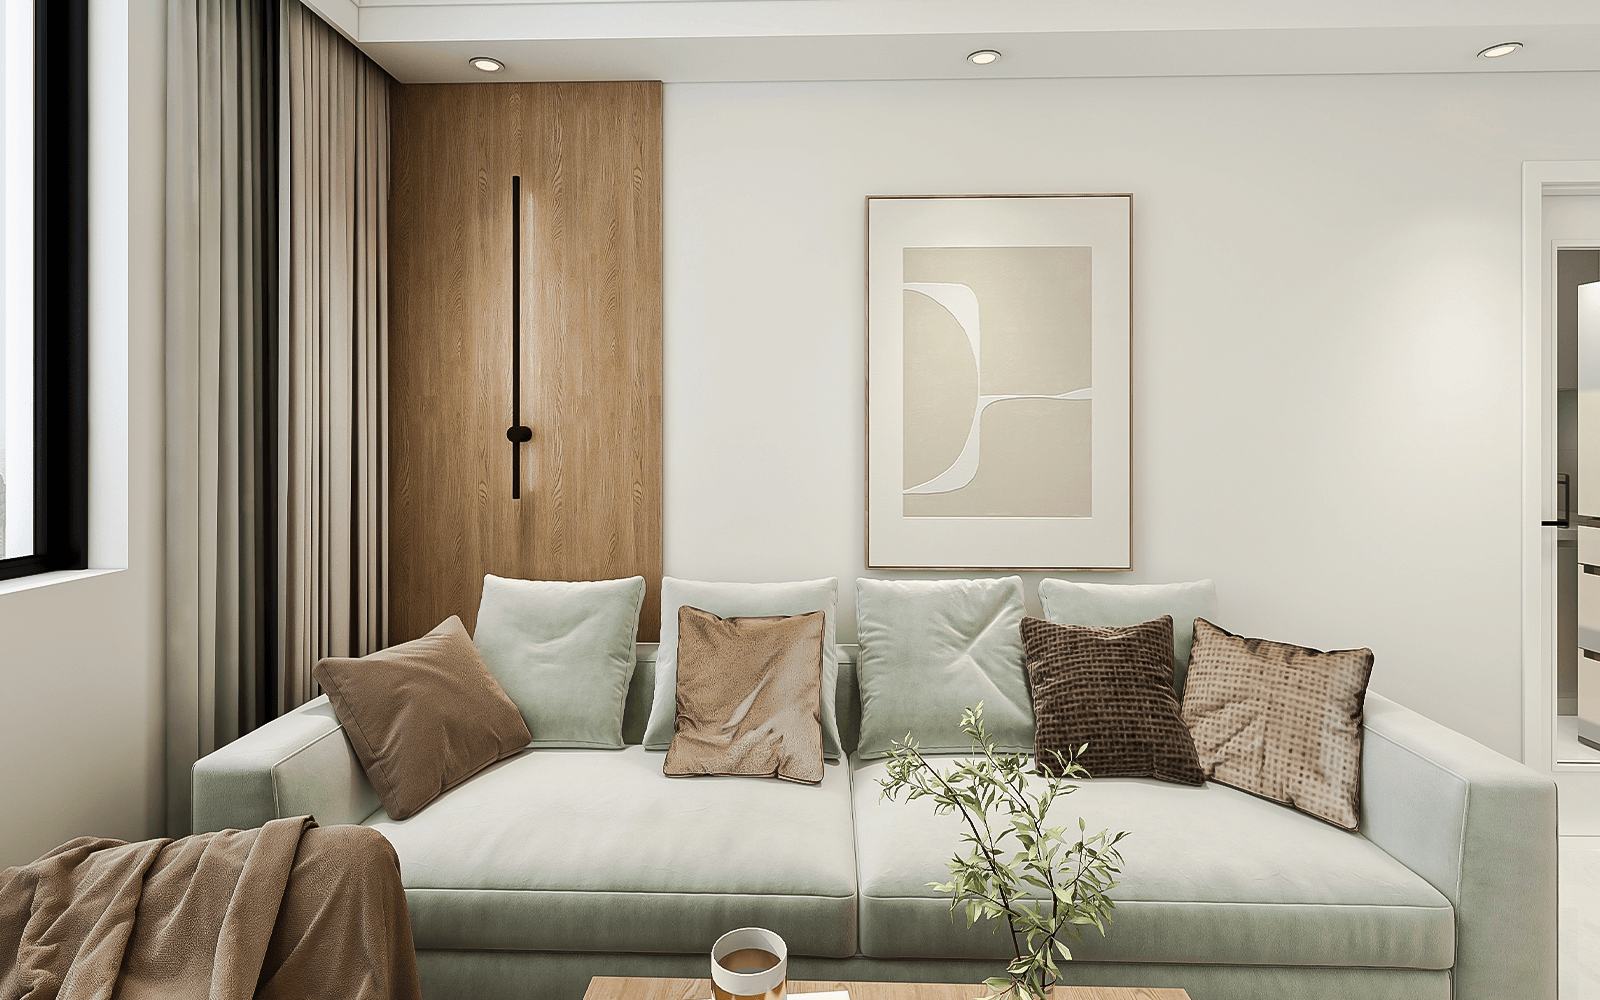 现代简约的装修风没有复杂的装饰，沙发选择了布艺材质，朴素简约。浅豆绿色的沙发与木色茶几，白色背景墙搭配自然和谐。